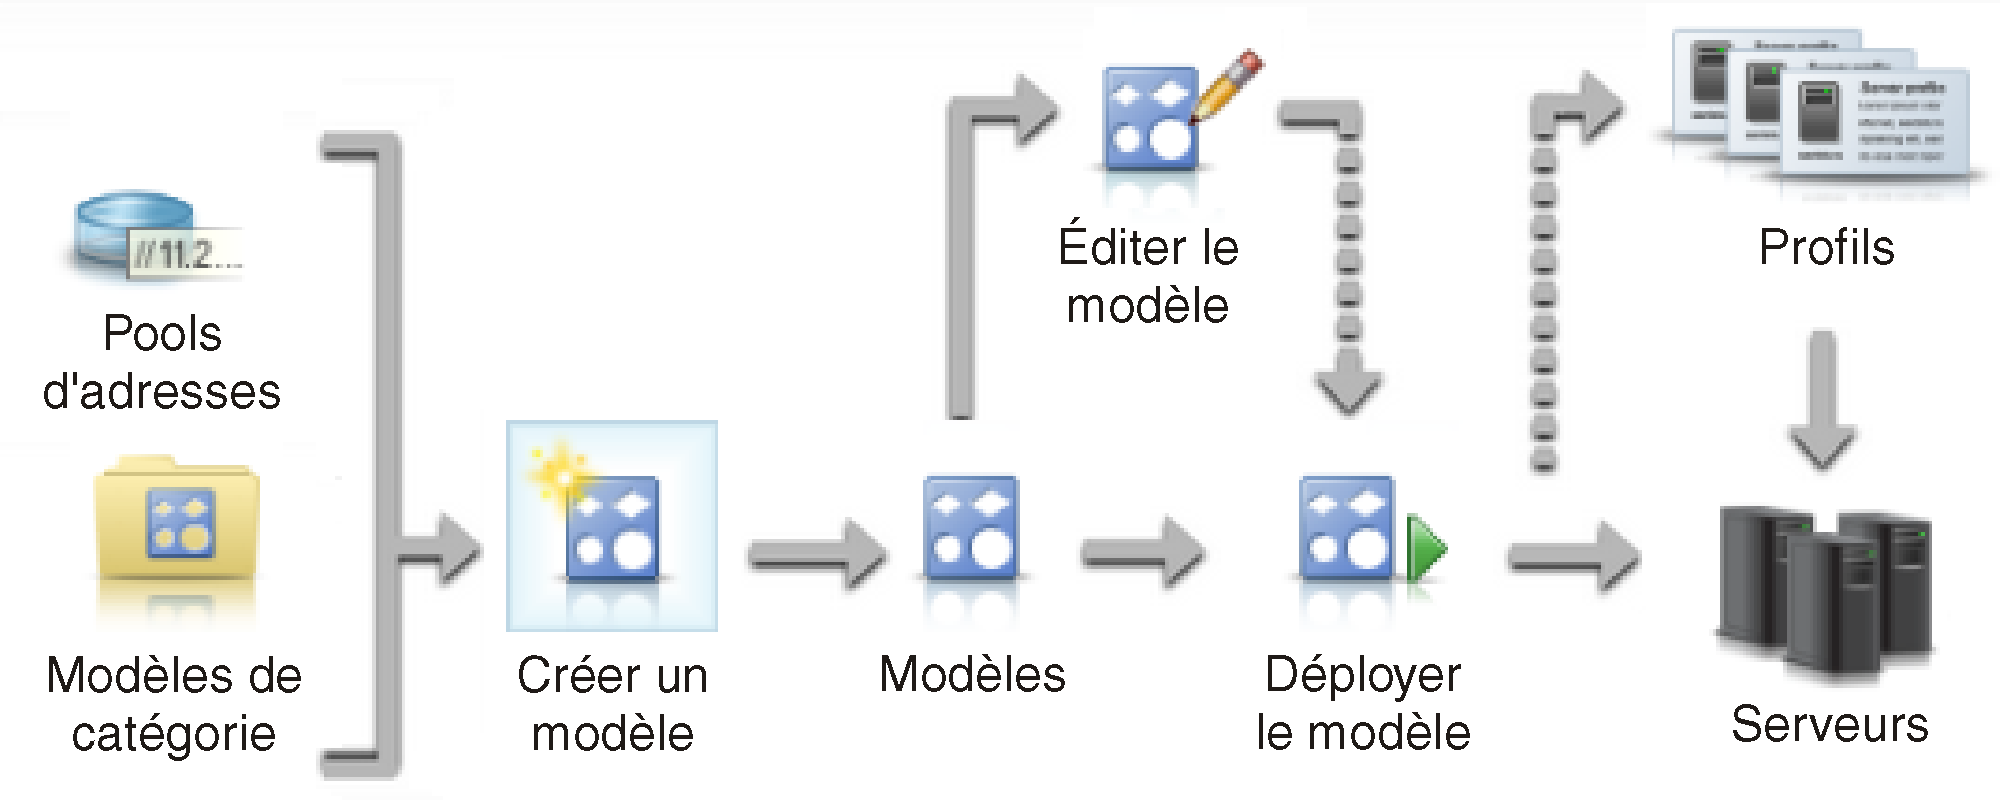 Illustre les étapes impliquées dans la création et le déploiement de modèles de serveur.